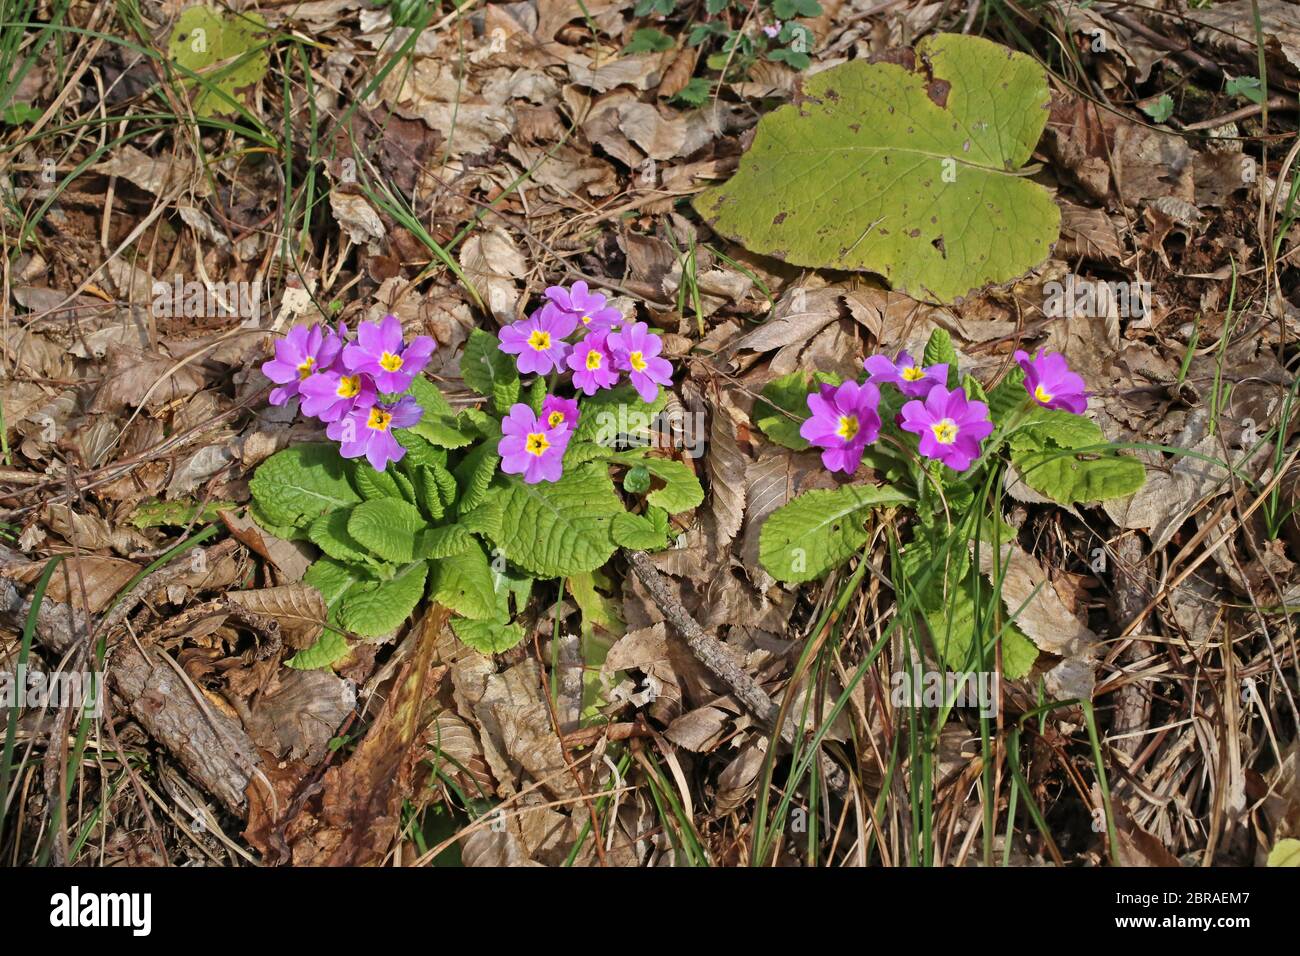 Primula acaulis subsp. rubra, Primrose. Wild plant shot in the spring. Stock Photo